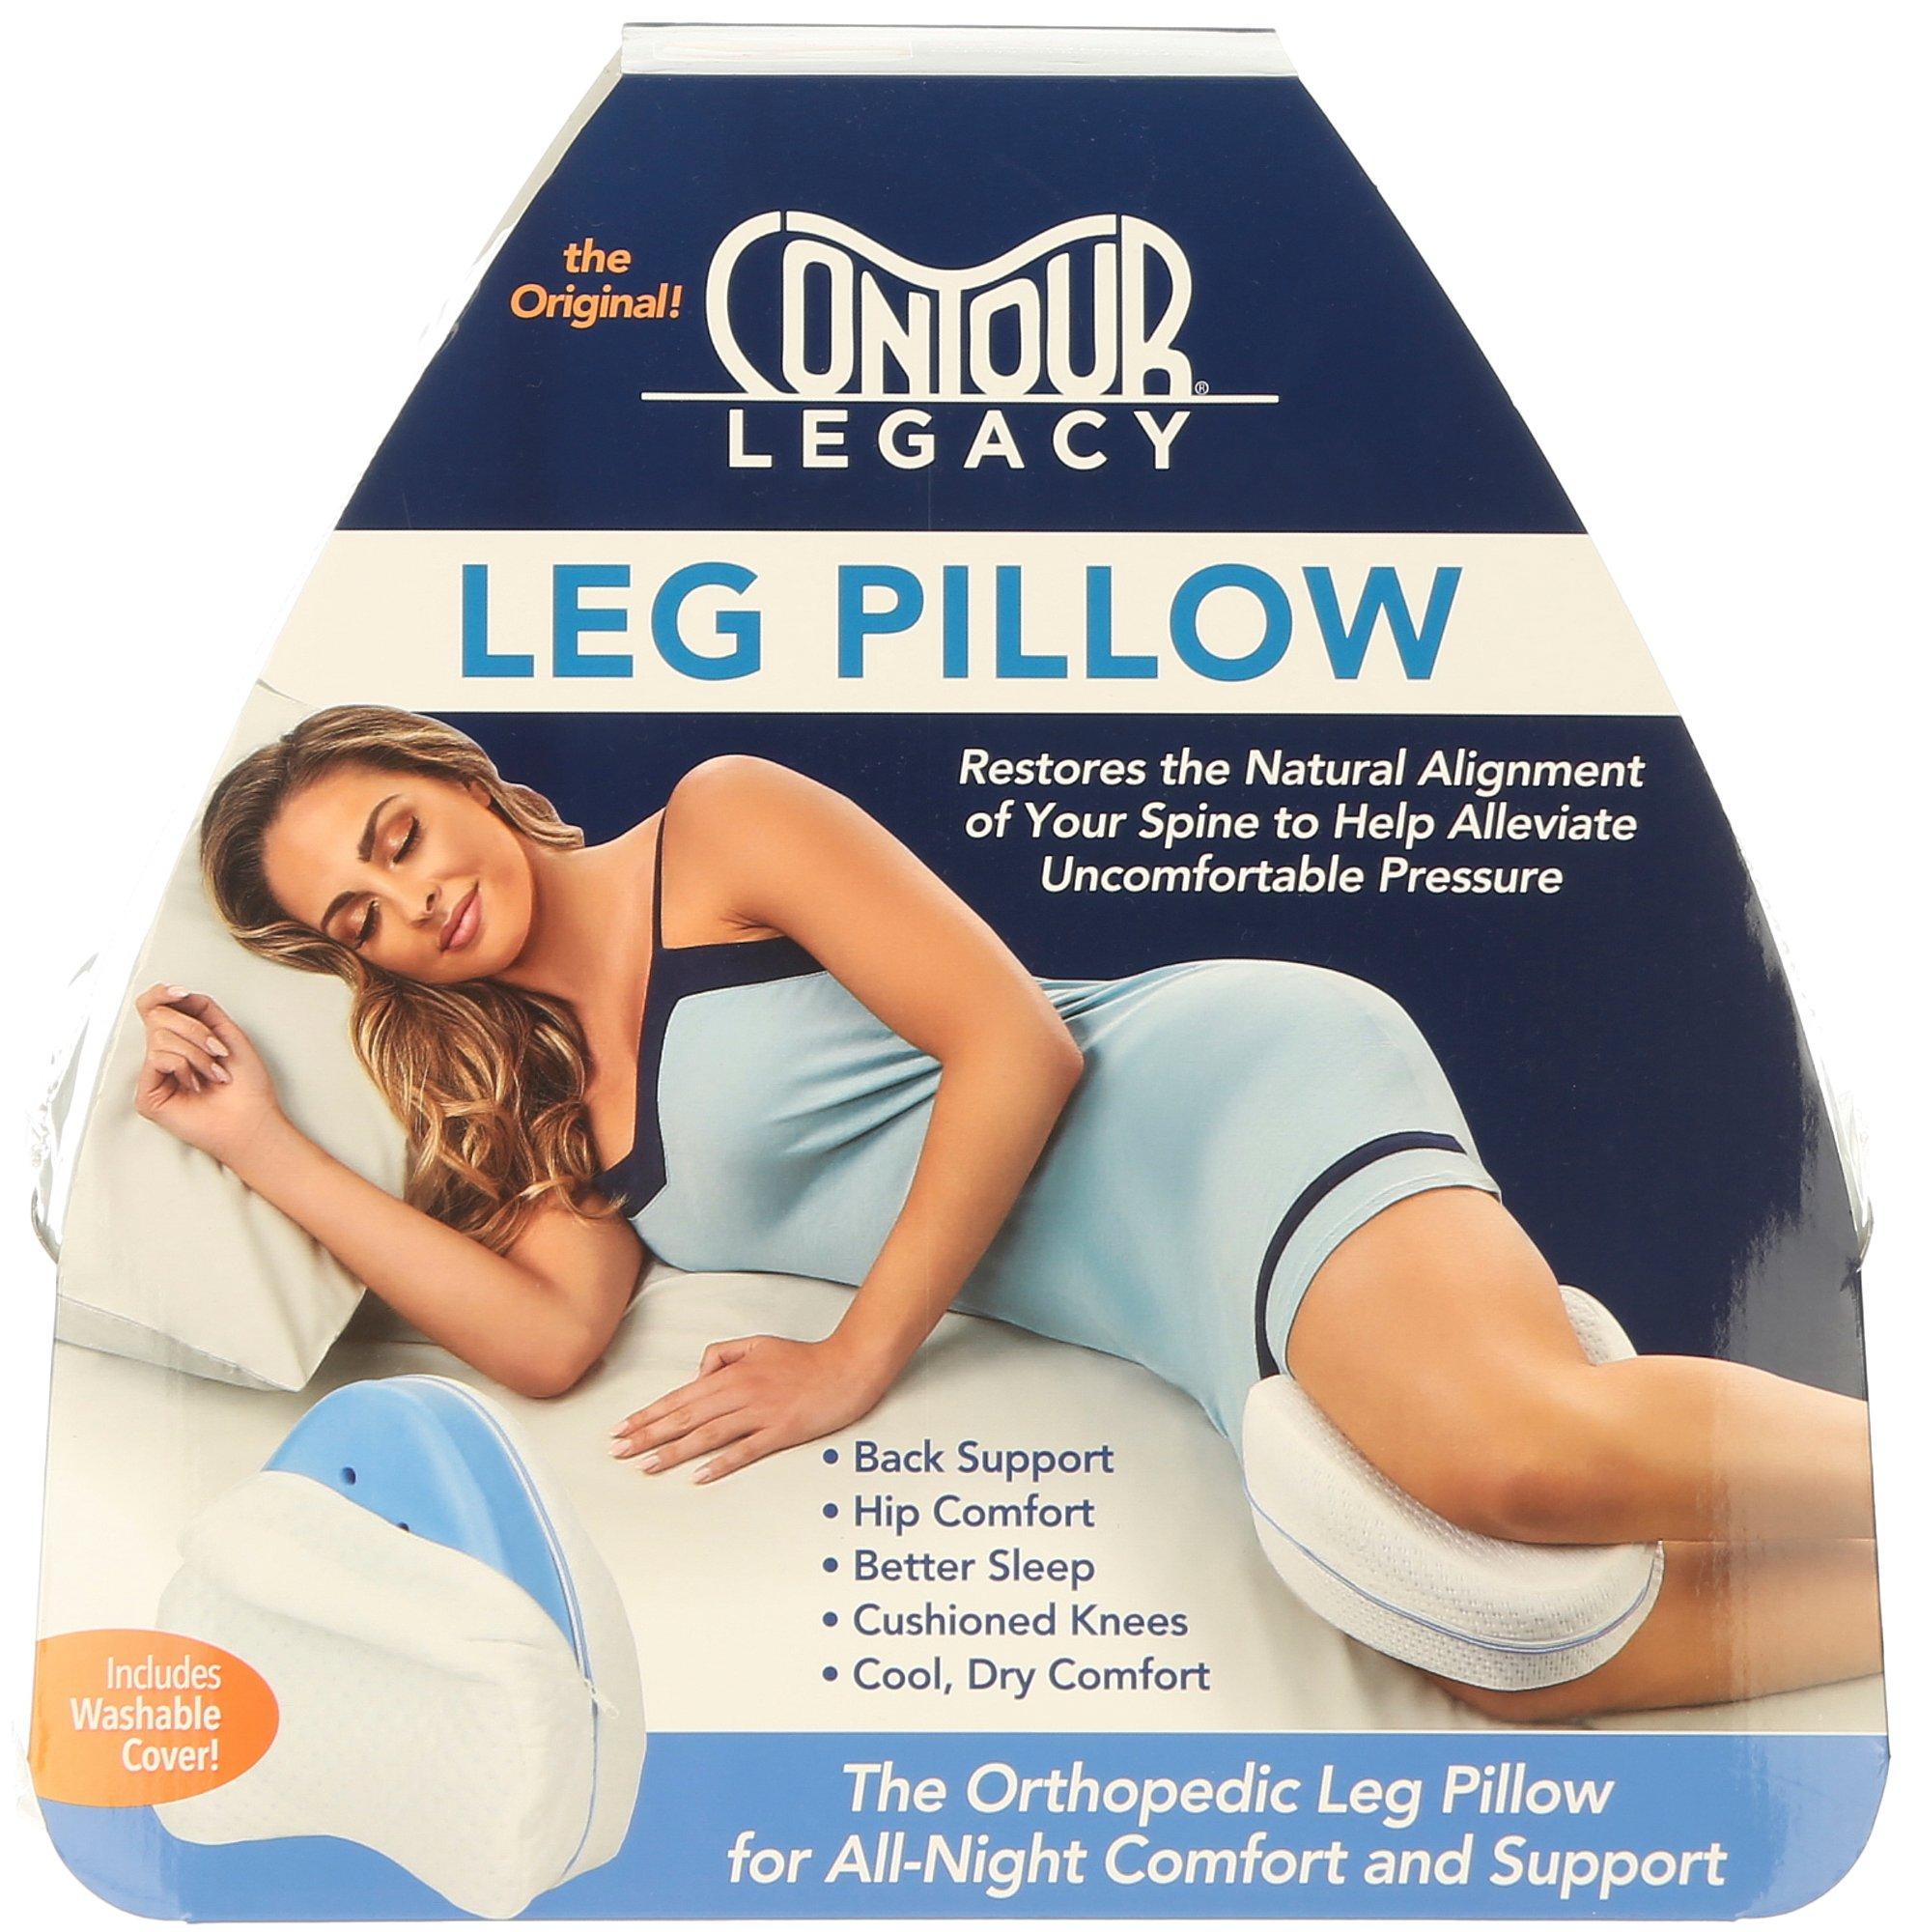 CONTOURS Contour Legacy Leg Pillow